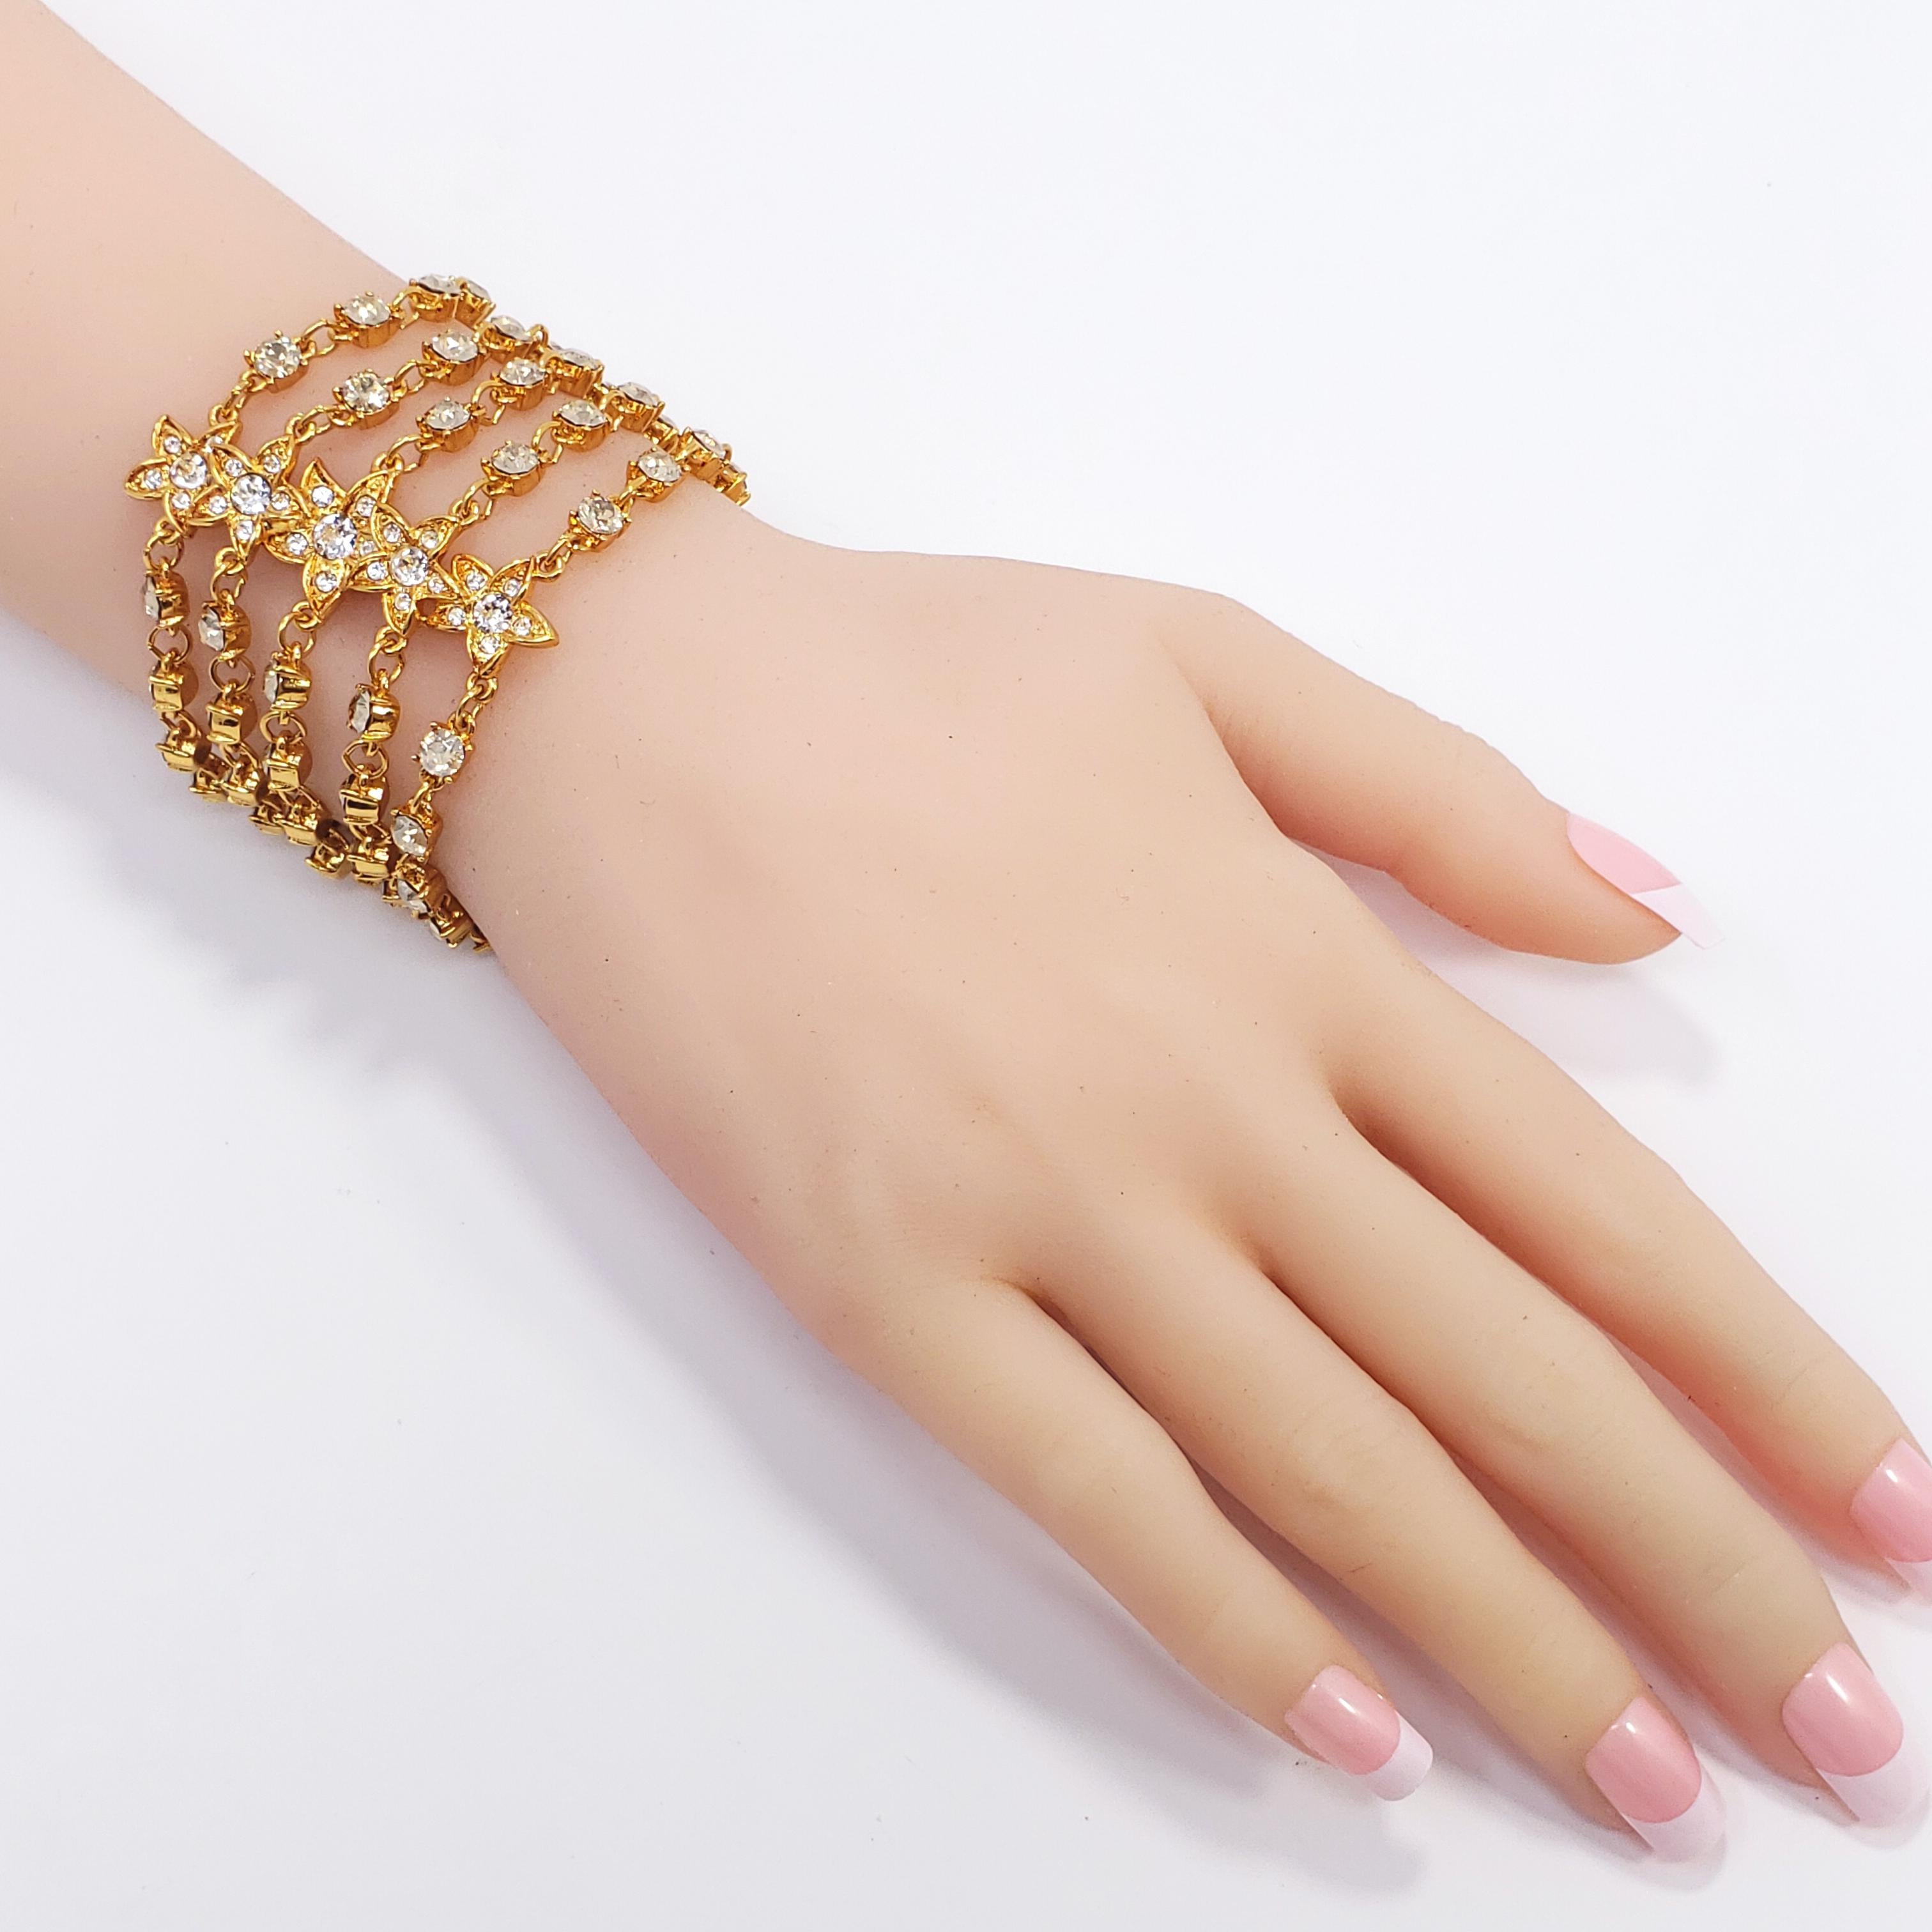 Dieses Armband von Oscar de la Renta besteht aus fünf Strängen mit goldfarbenen Kettengliedern, die mit Kristallen in Zackenfassung und floralen Motiven verziert sind. Ein Funkeln wie kein anderes!

Verschluss mit Knebelschließe.
Markenzeichen: